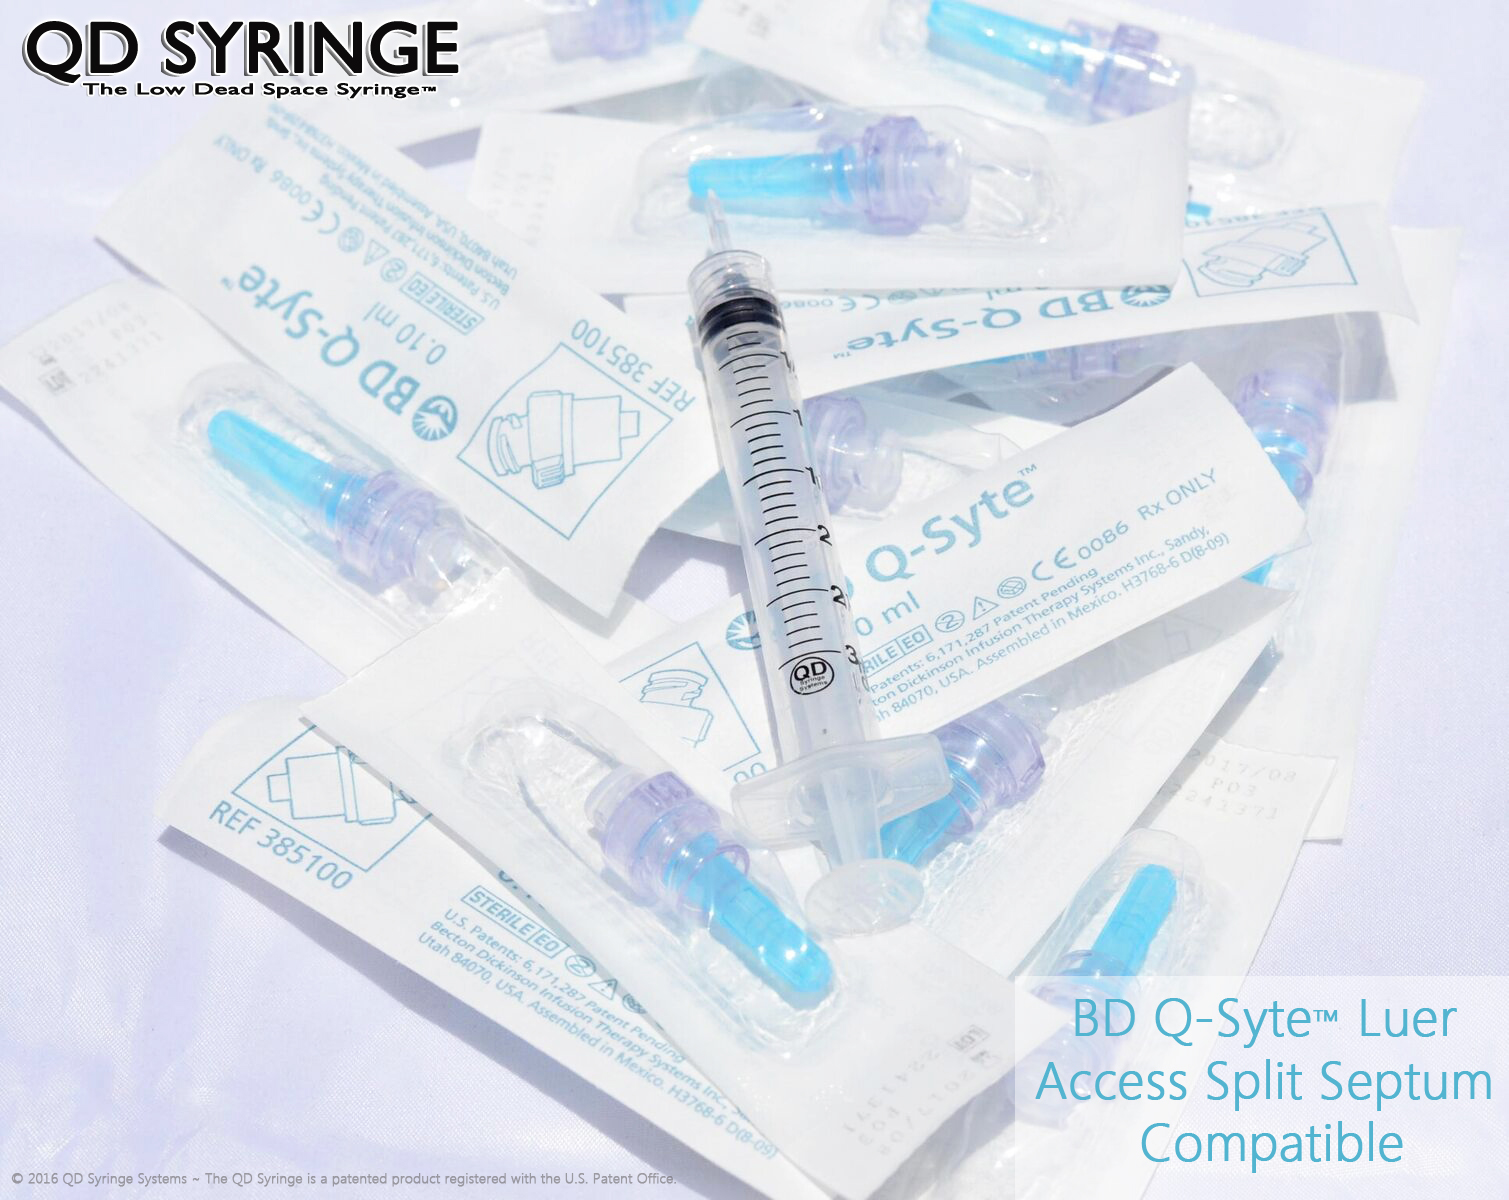 qd-syringe-compatible-with-bd-q-syte-luer-access-split-septum